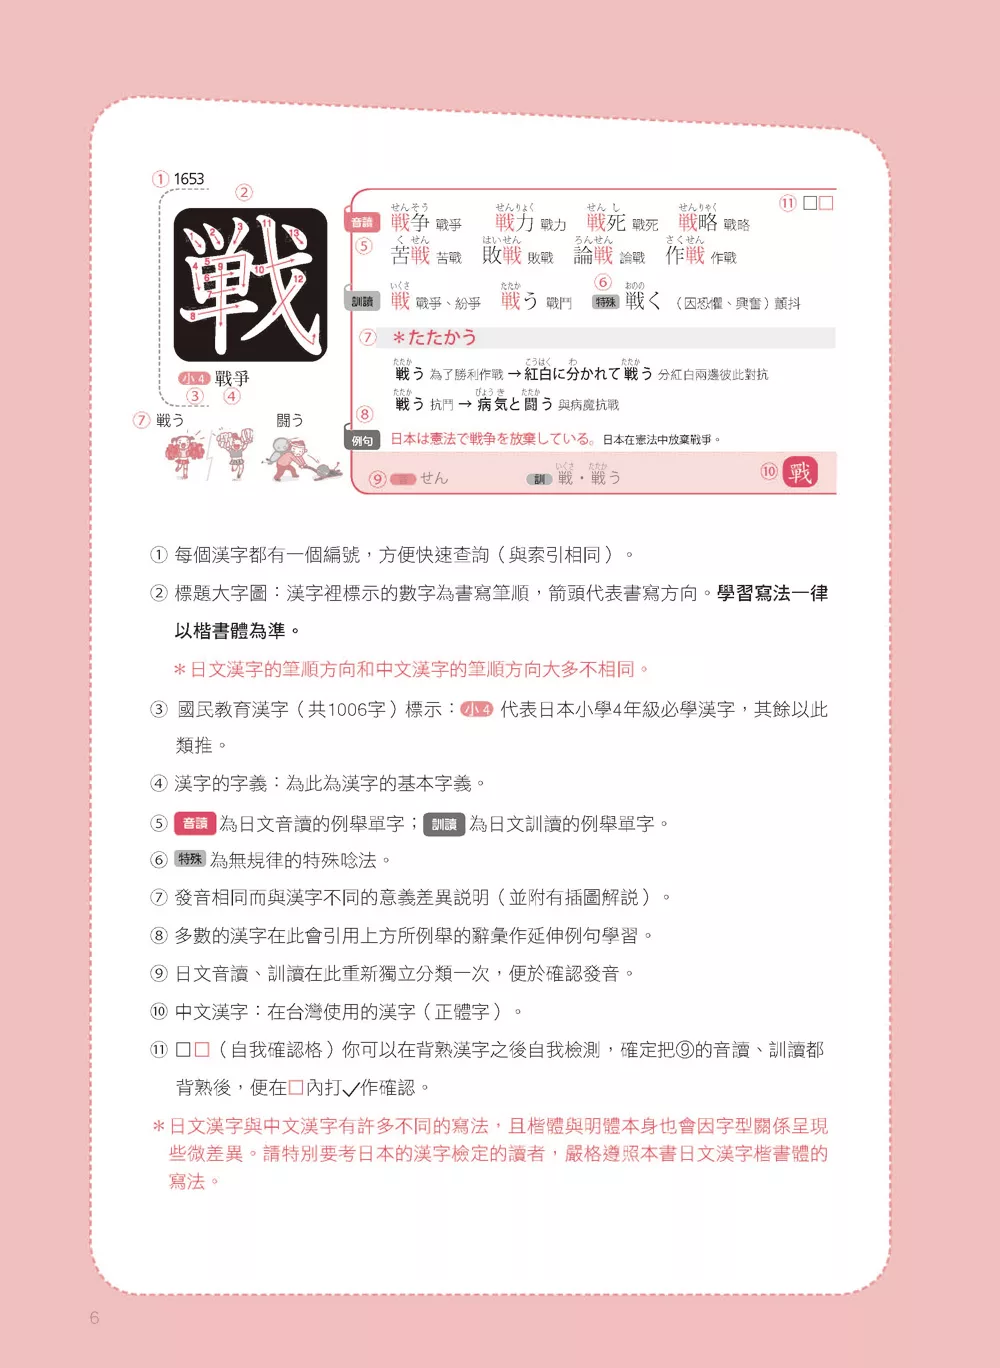 專賣在日本的華人 日本語漢字2 136 用漢字輕鬆記住12 000個日文單字 買書網